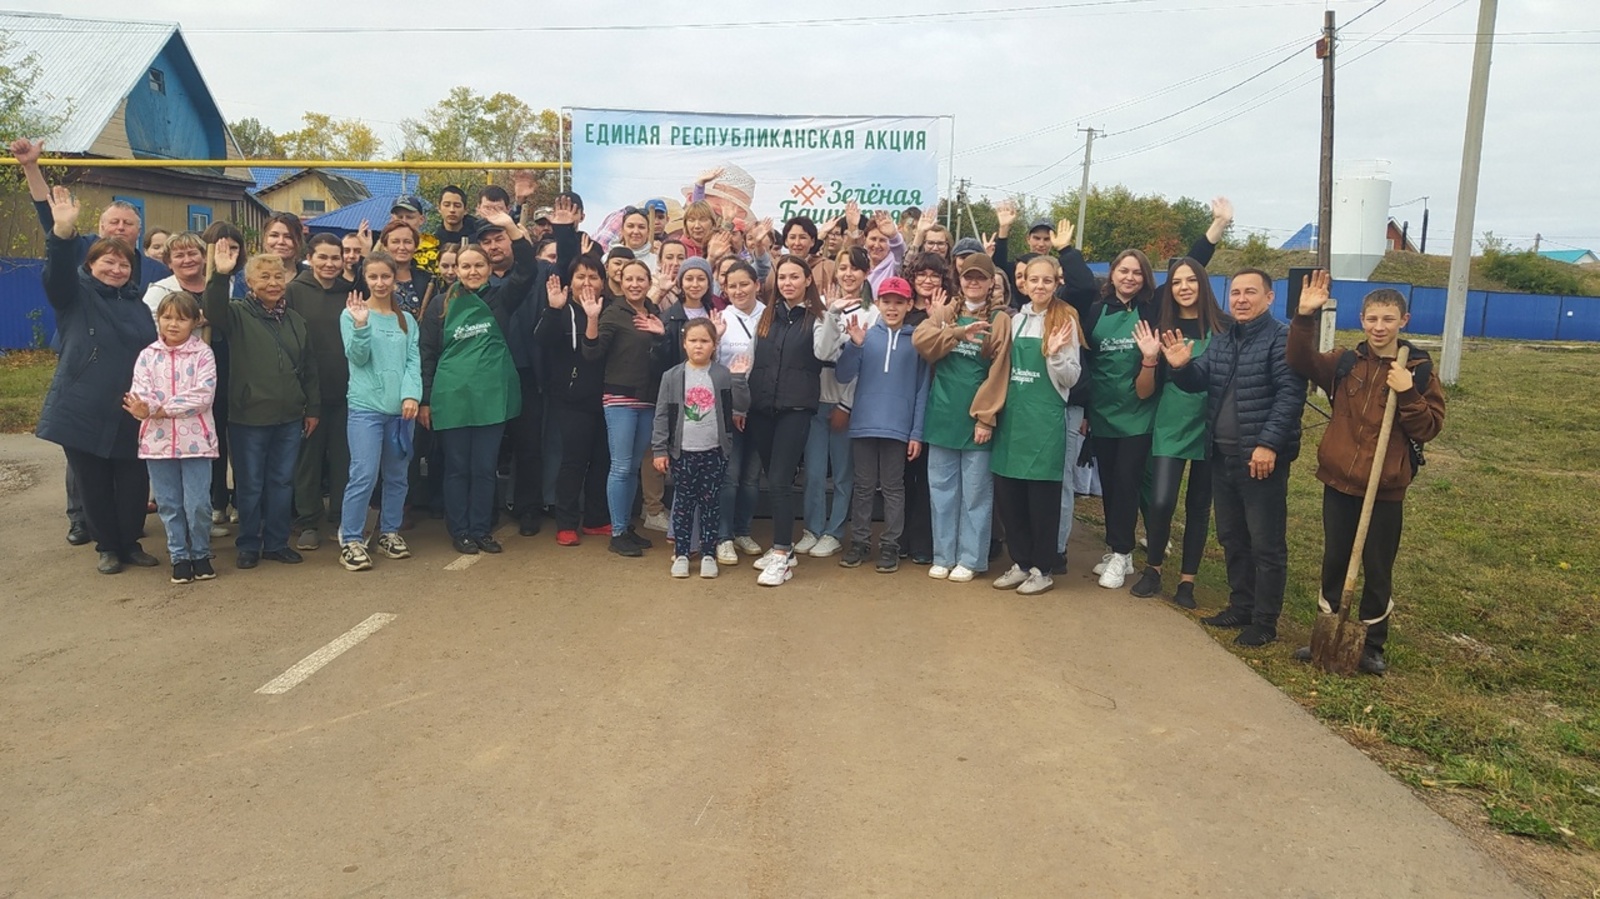 «Зеленая Башкирия» начала своё шествие по району